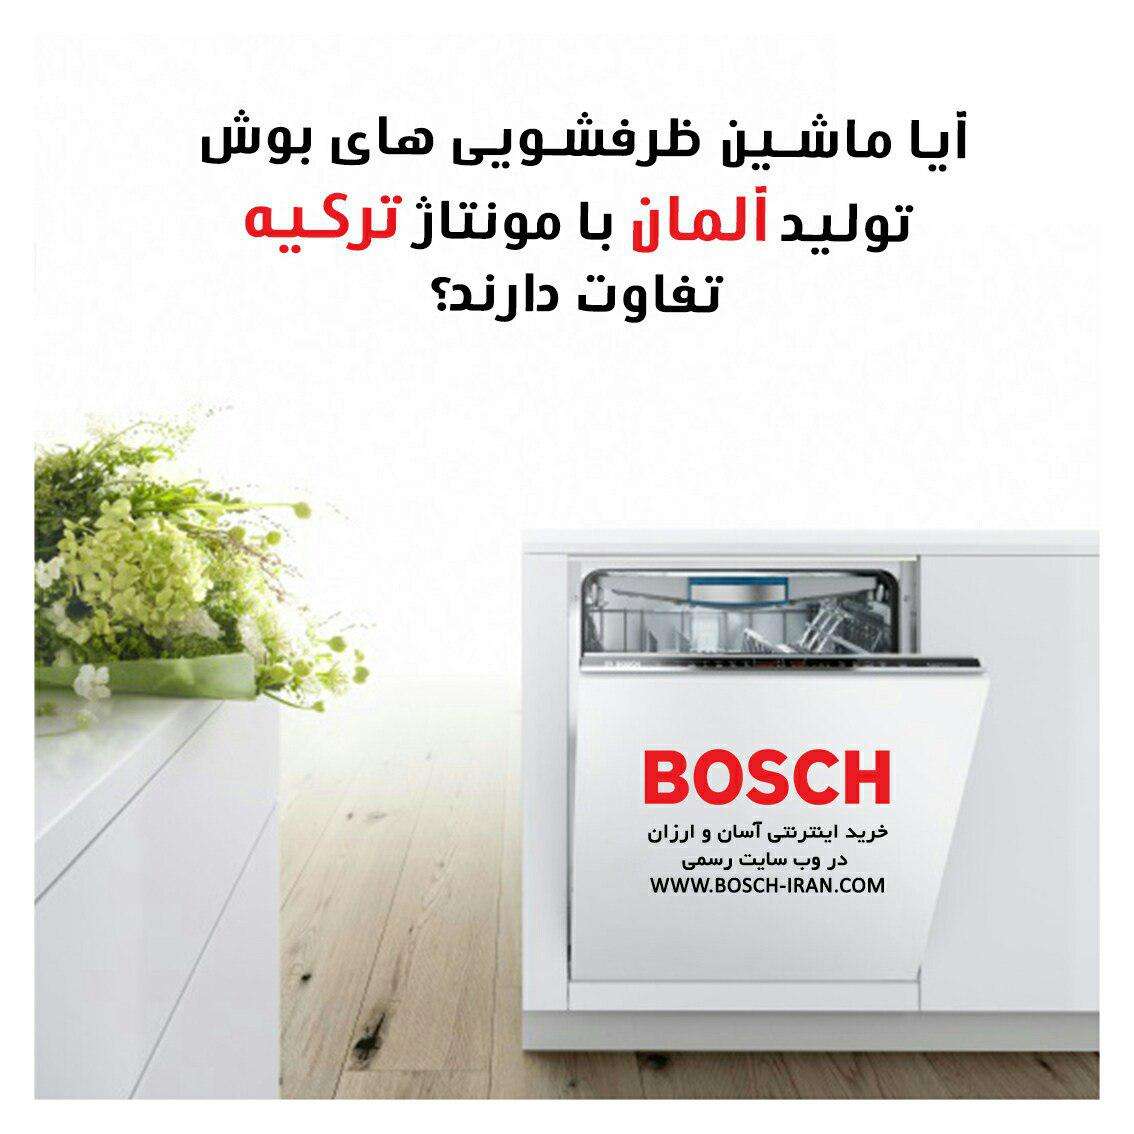 آیا ماشین ظرفشویی های بوش تولید آلمان با مونتاژ ترکیه تفاوت دارند؟